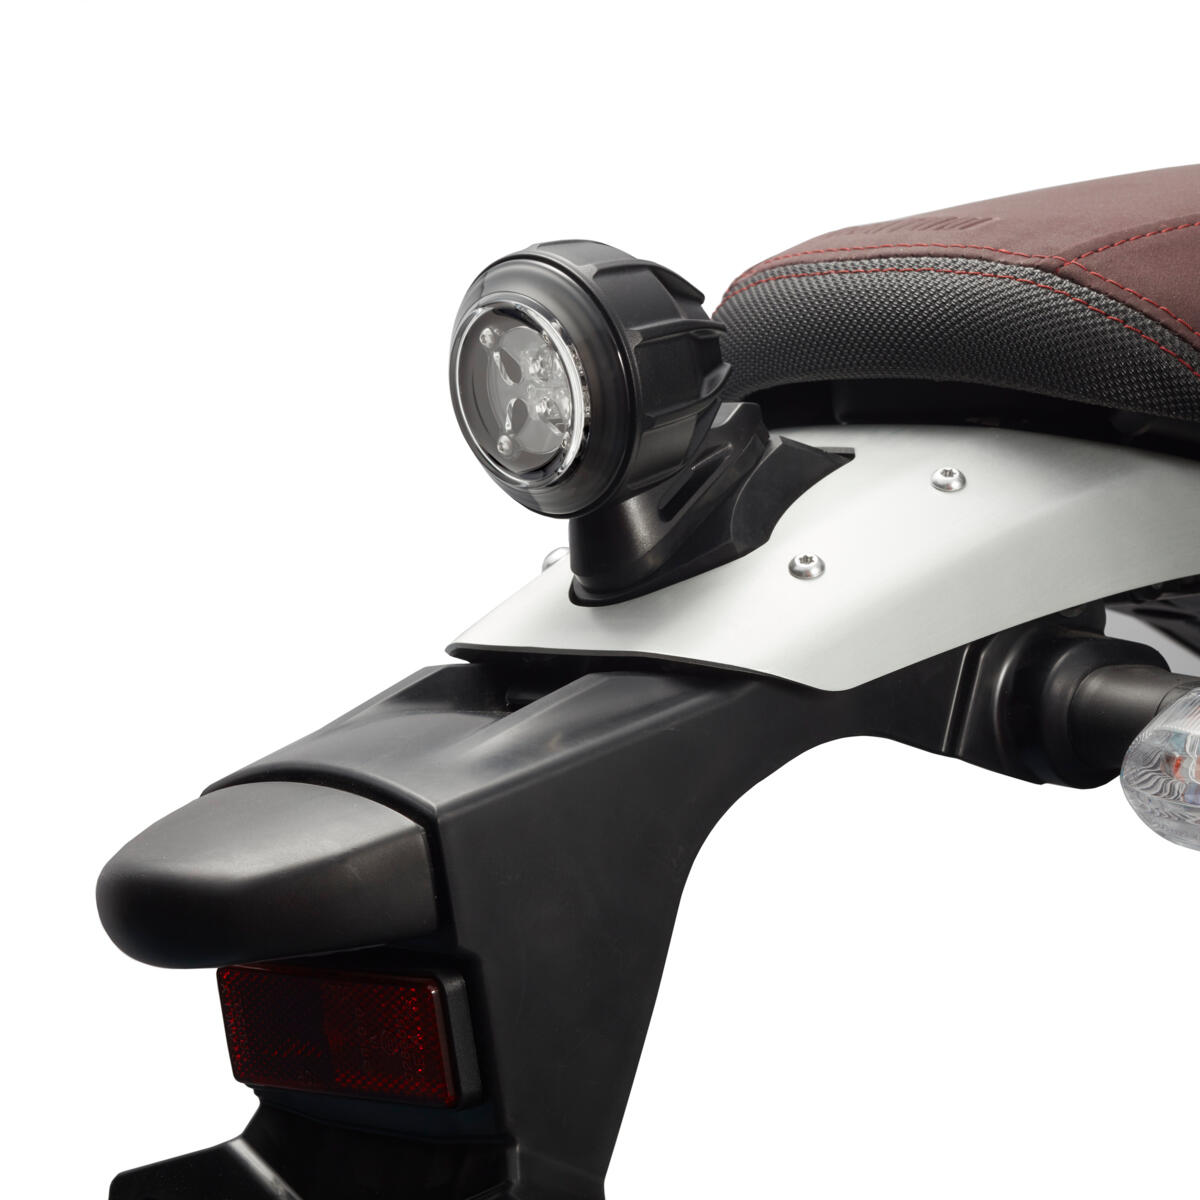 Modernt LED-bakljus som ger din motorcykel en snygg touch, i kombination med en autentisk känsla.